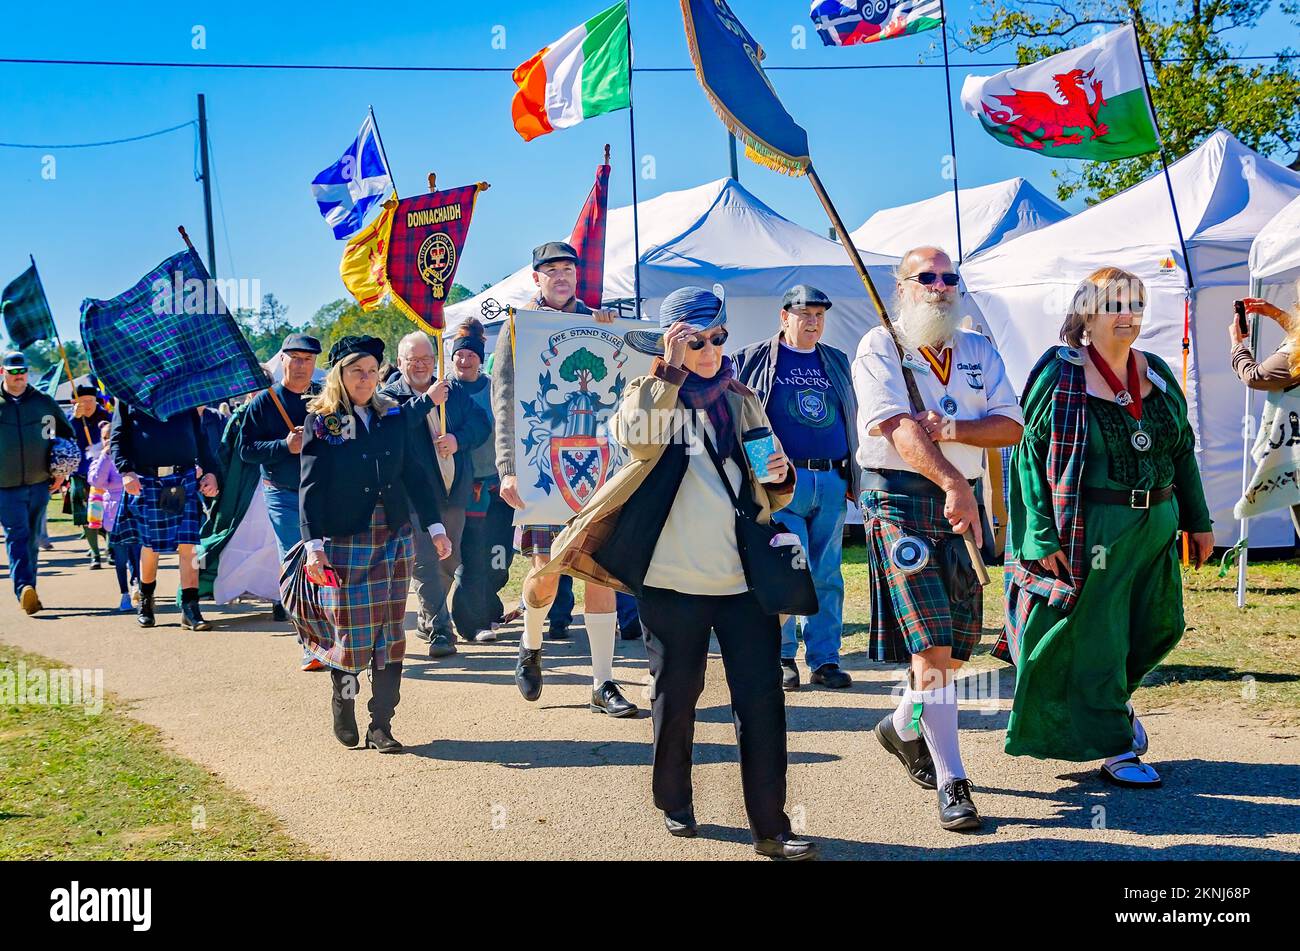 La gente lleva pancartas de tartán y banderas celtas durante el desfile de los tártanes del clan en los Juegos Escoceses de las Tierras Altas en Gulfport, Mississippi. Foto de stock